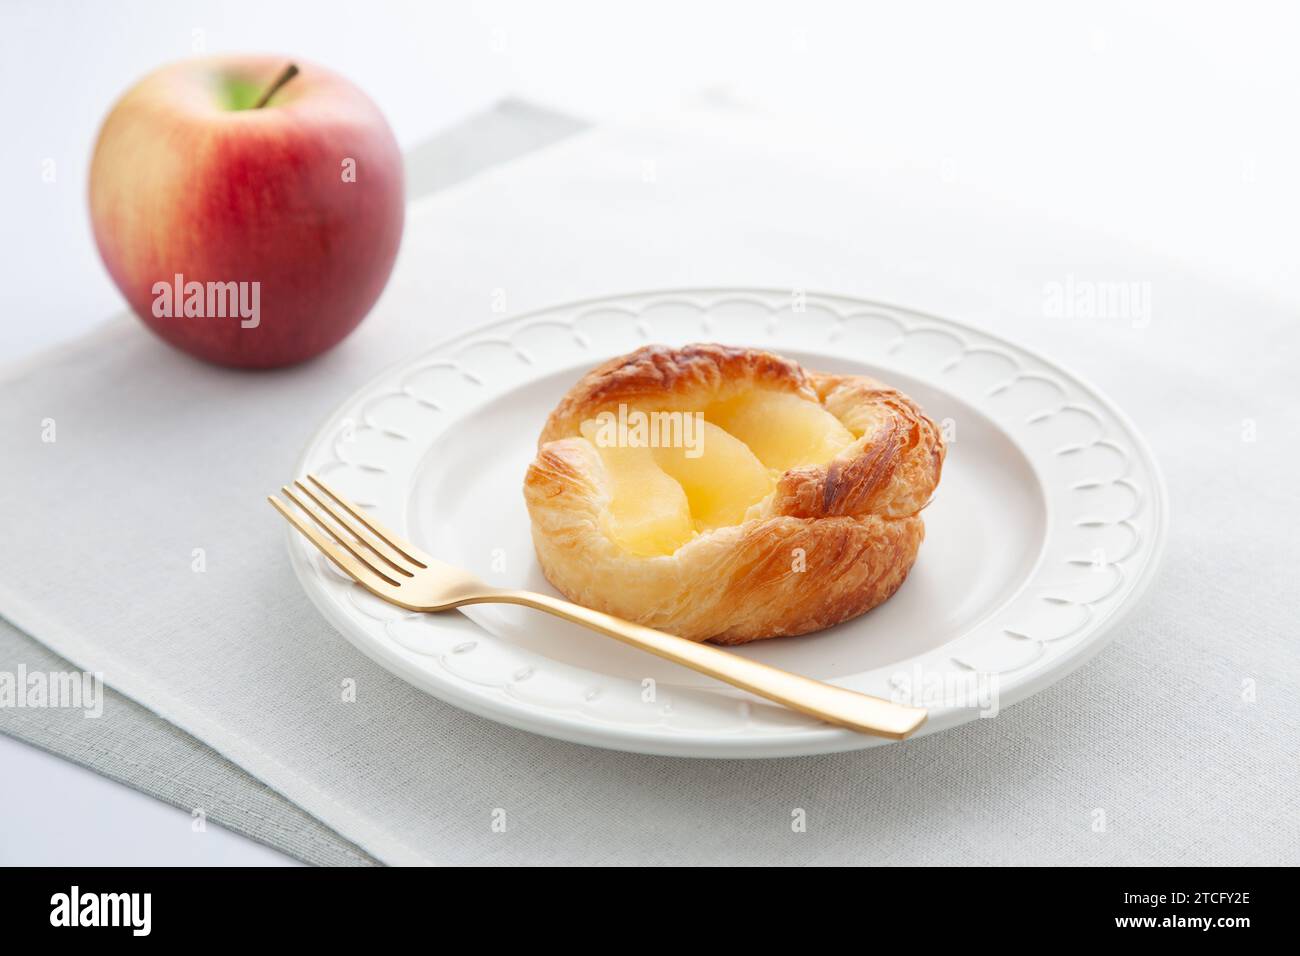 tarte aux pommes sur assiette sur table Banque D'Images